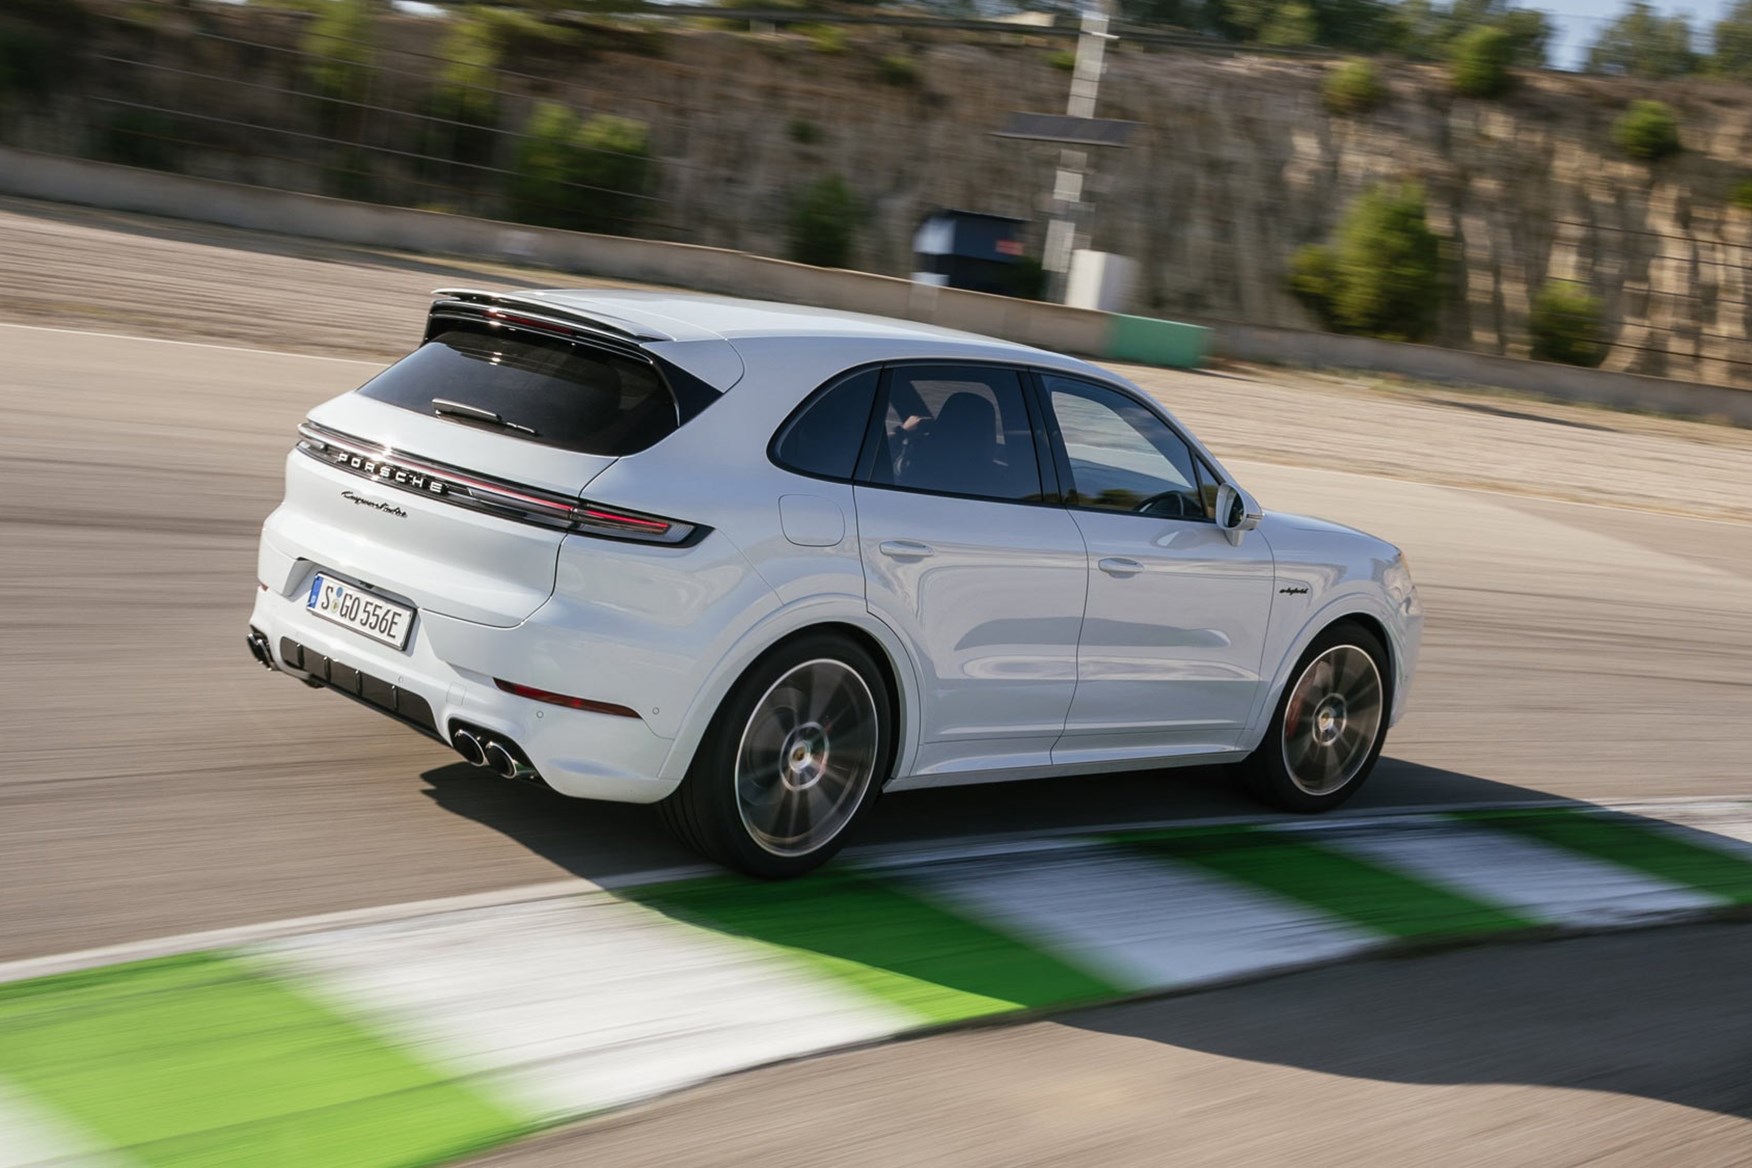 Огляд Porsche Cayenne S E-Hybrid: дизайн, характеристики та враження від водіння